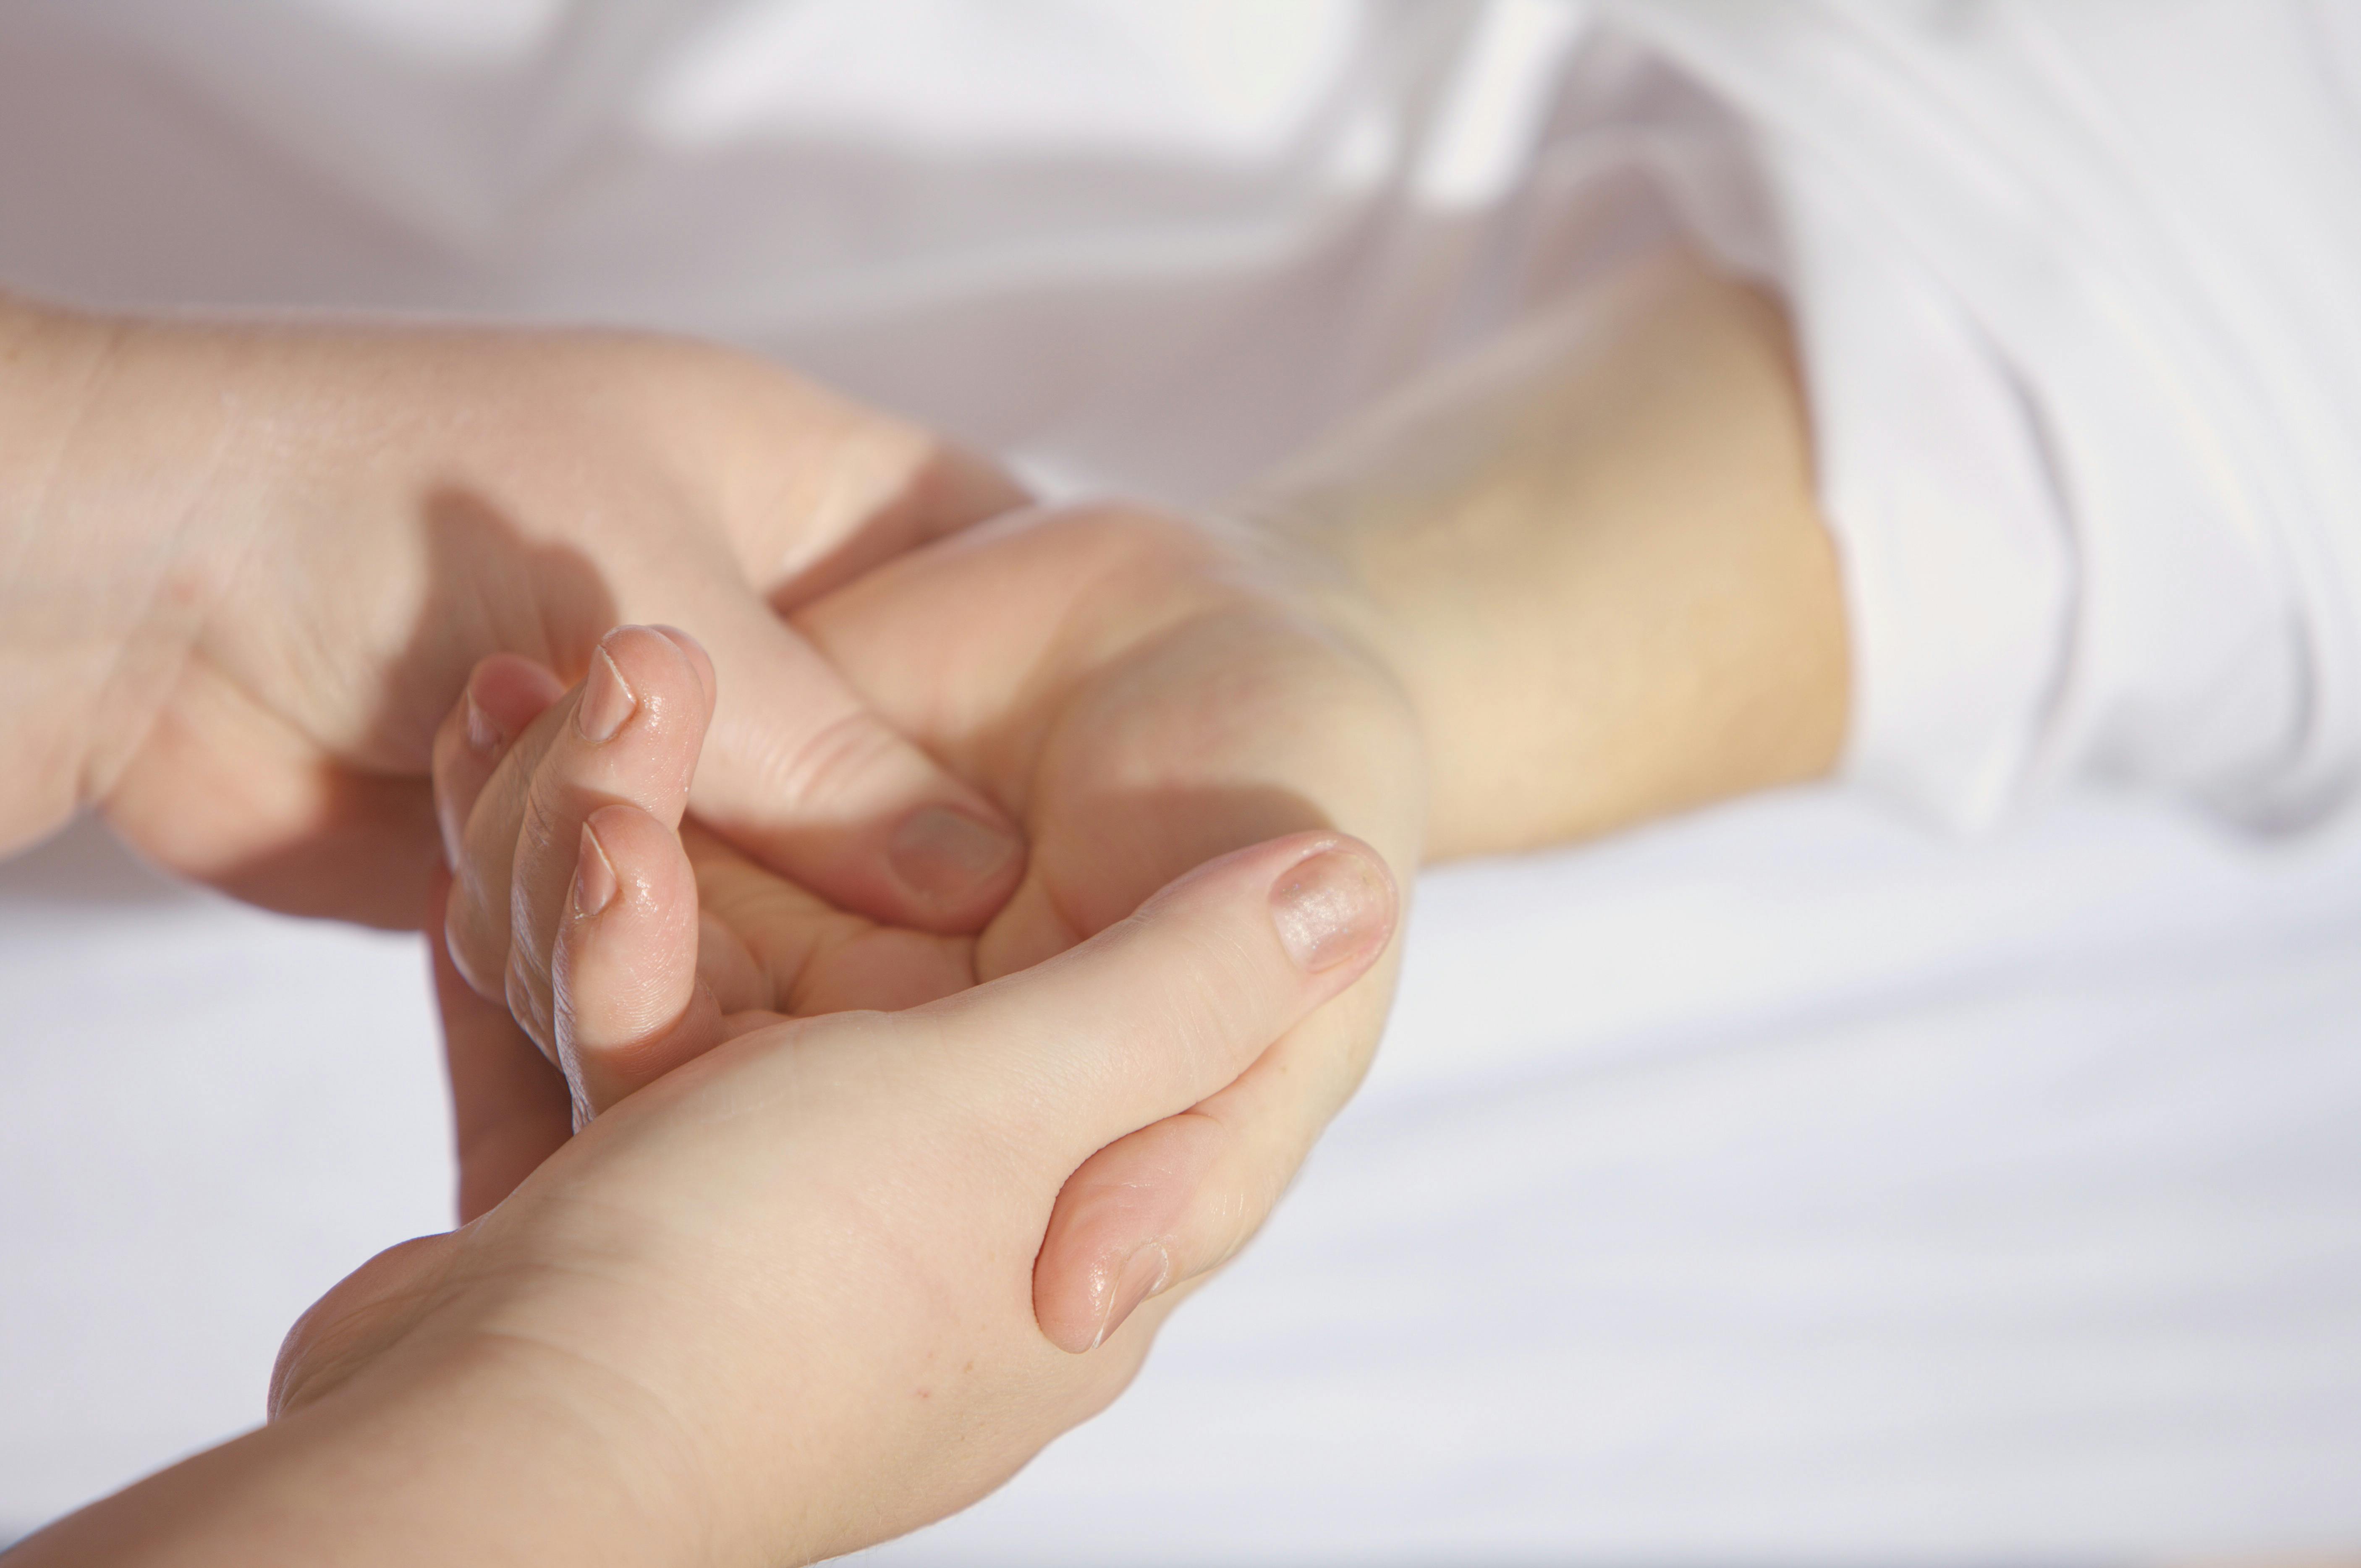 Bild von einer Handmassage, um die Massage Leistung zu Symbolisieren.